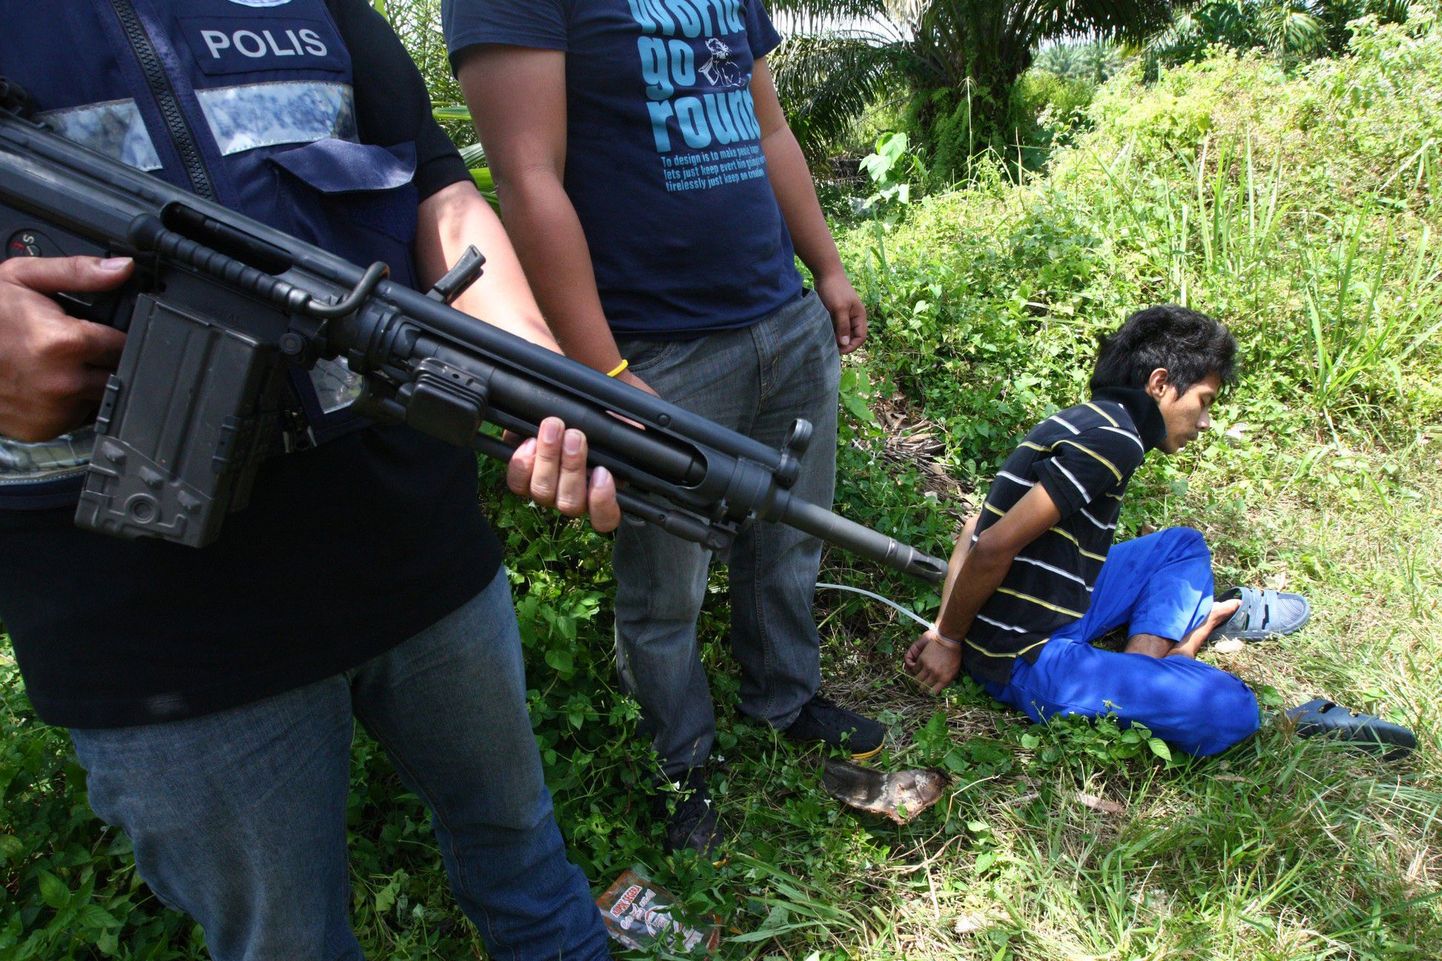 Malaisia politseinikud valvavad arvatavat filipiinlasest sissetungijat, kes koos mõttekaaslastega veebruaris Borneo saarele sisse tungisid.